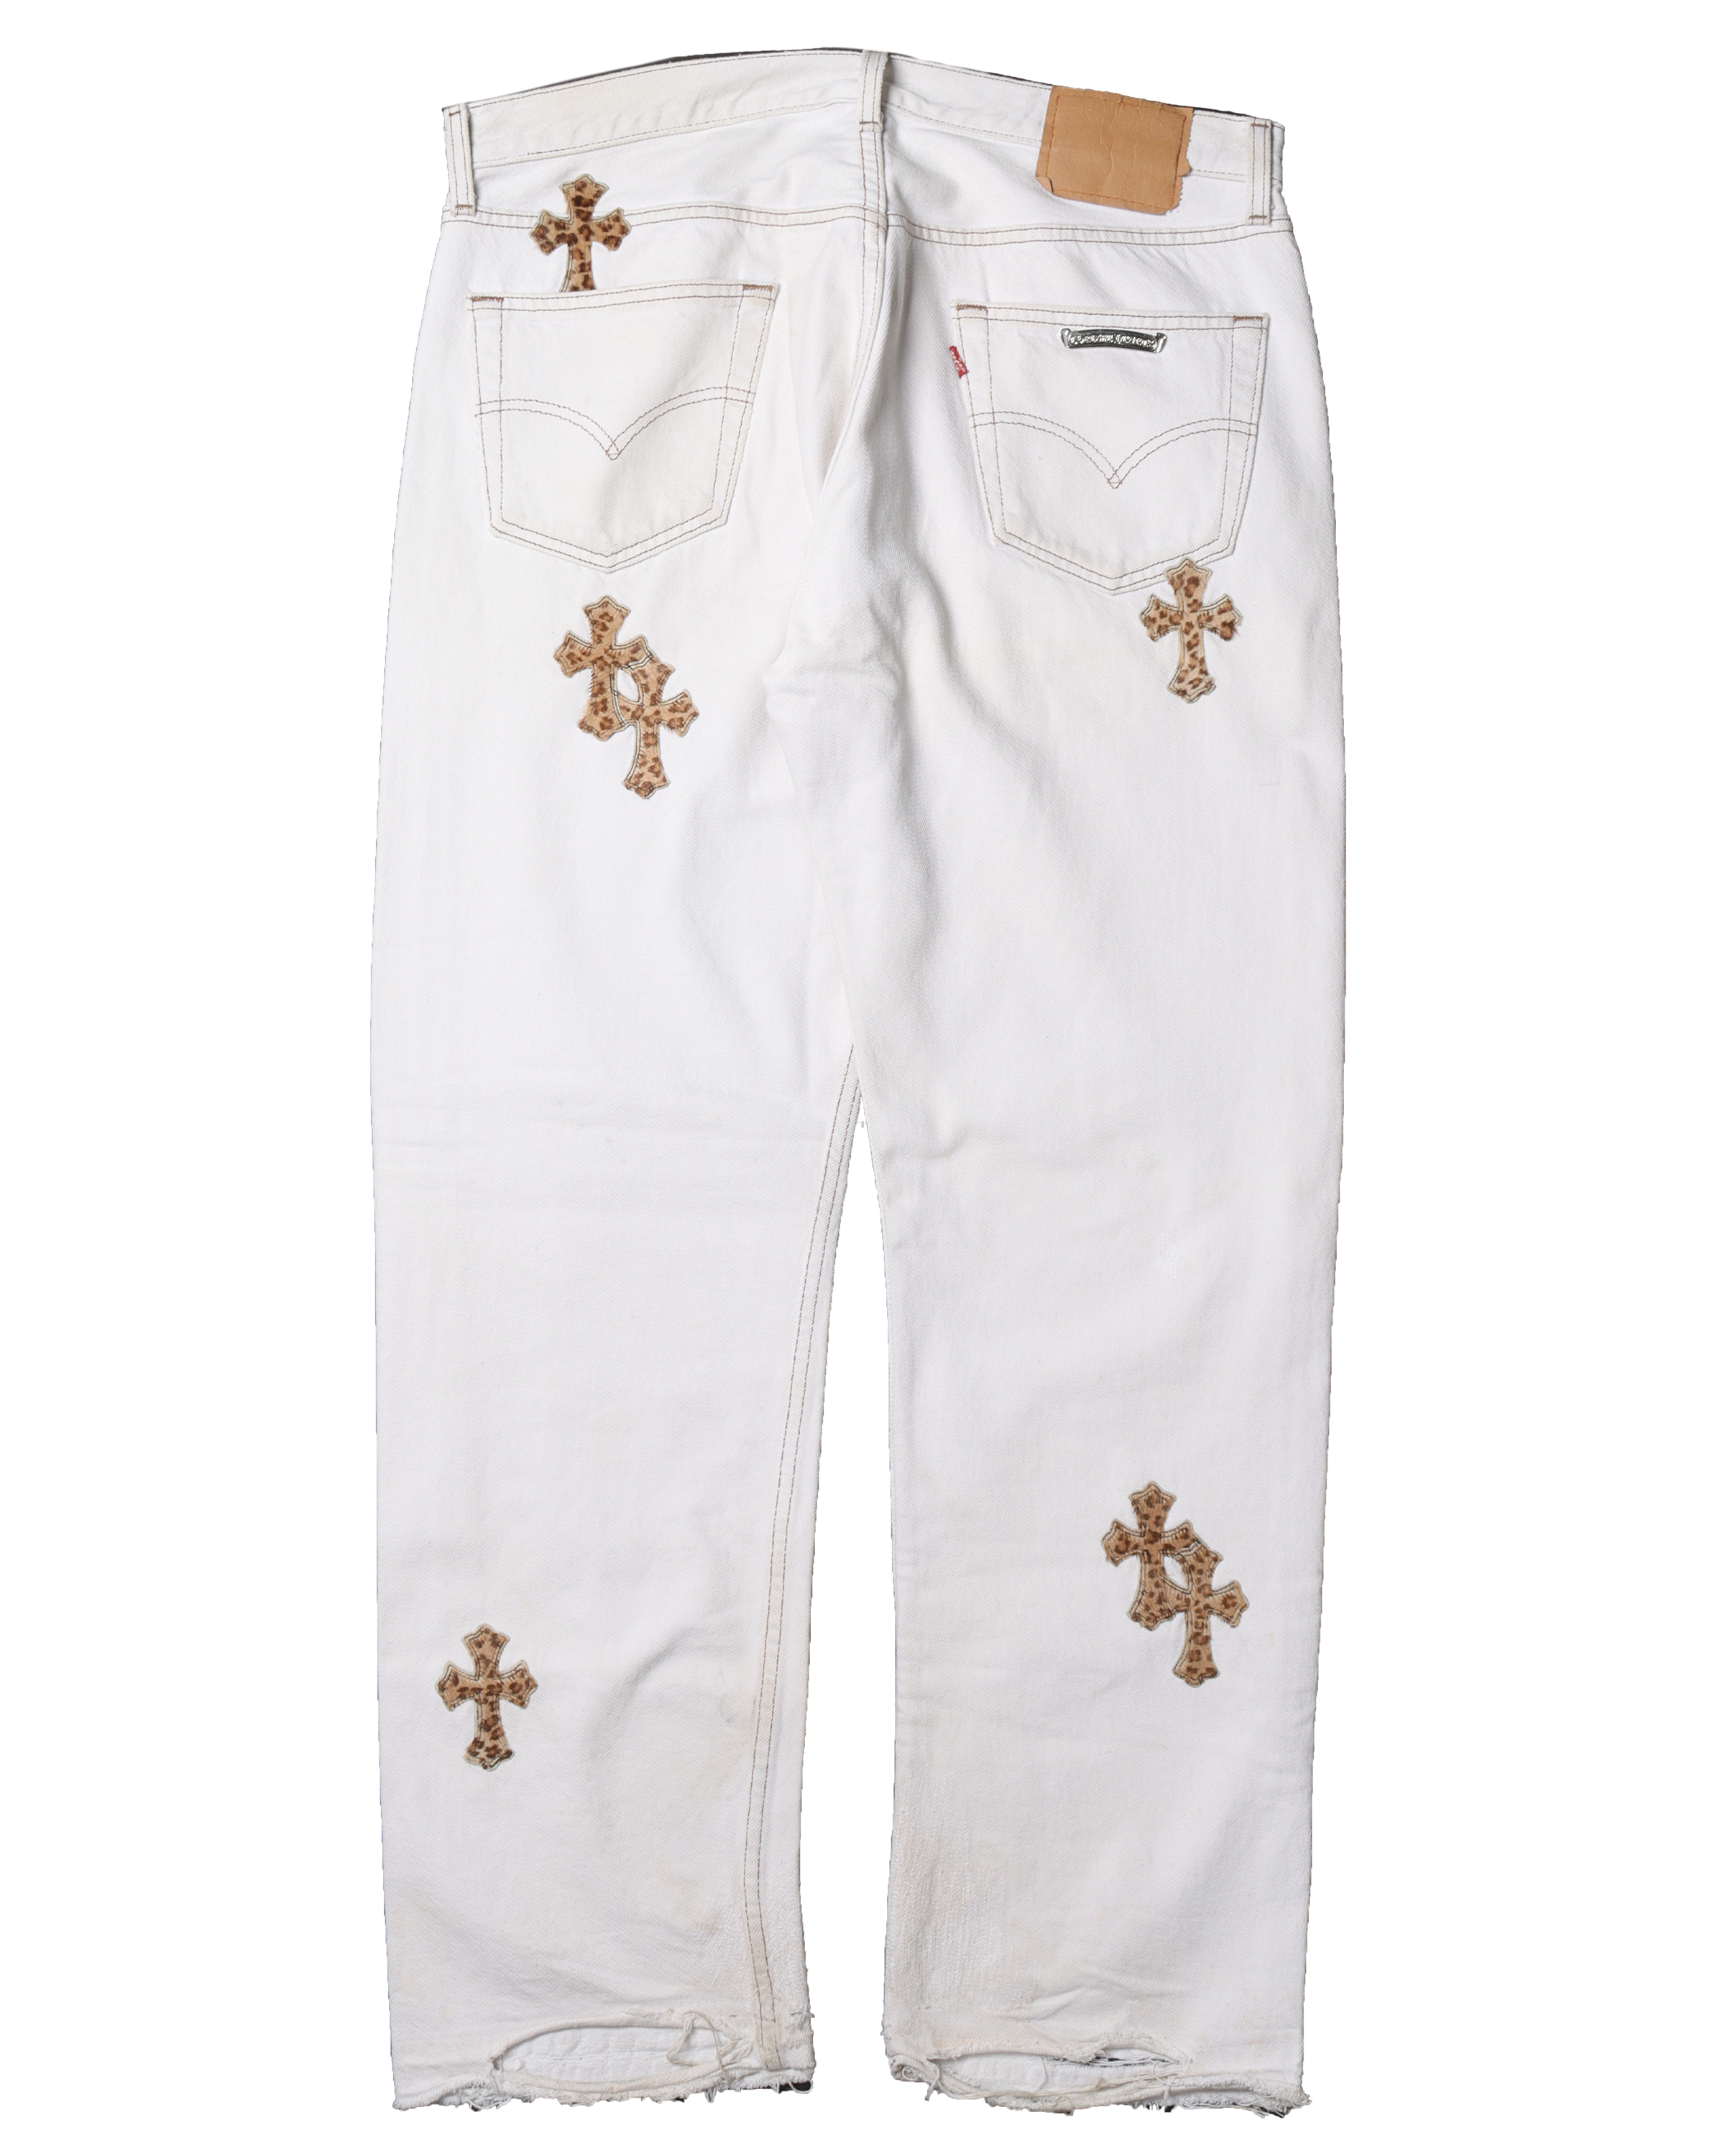 Leopard Cross White Jeans